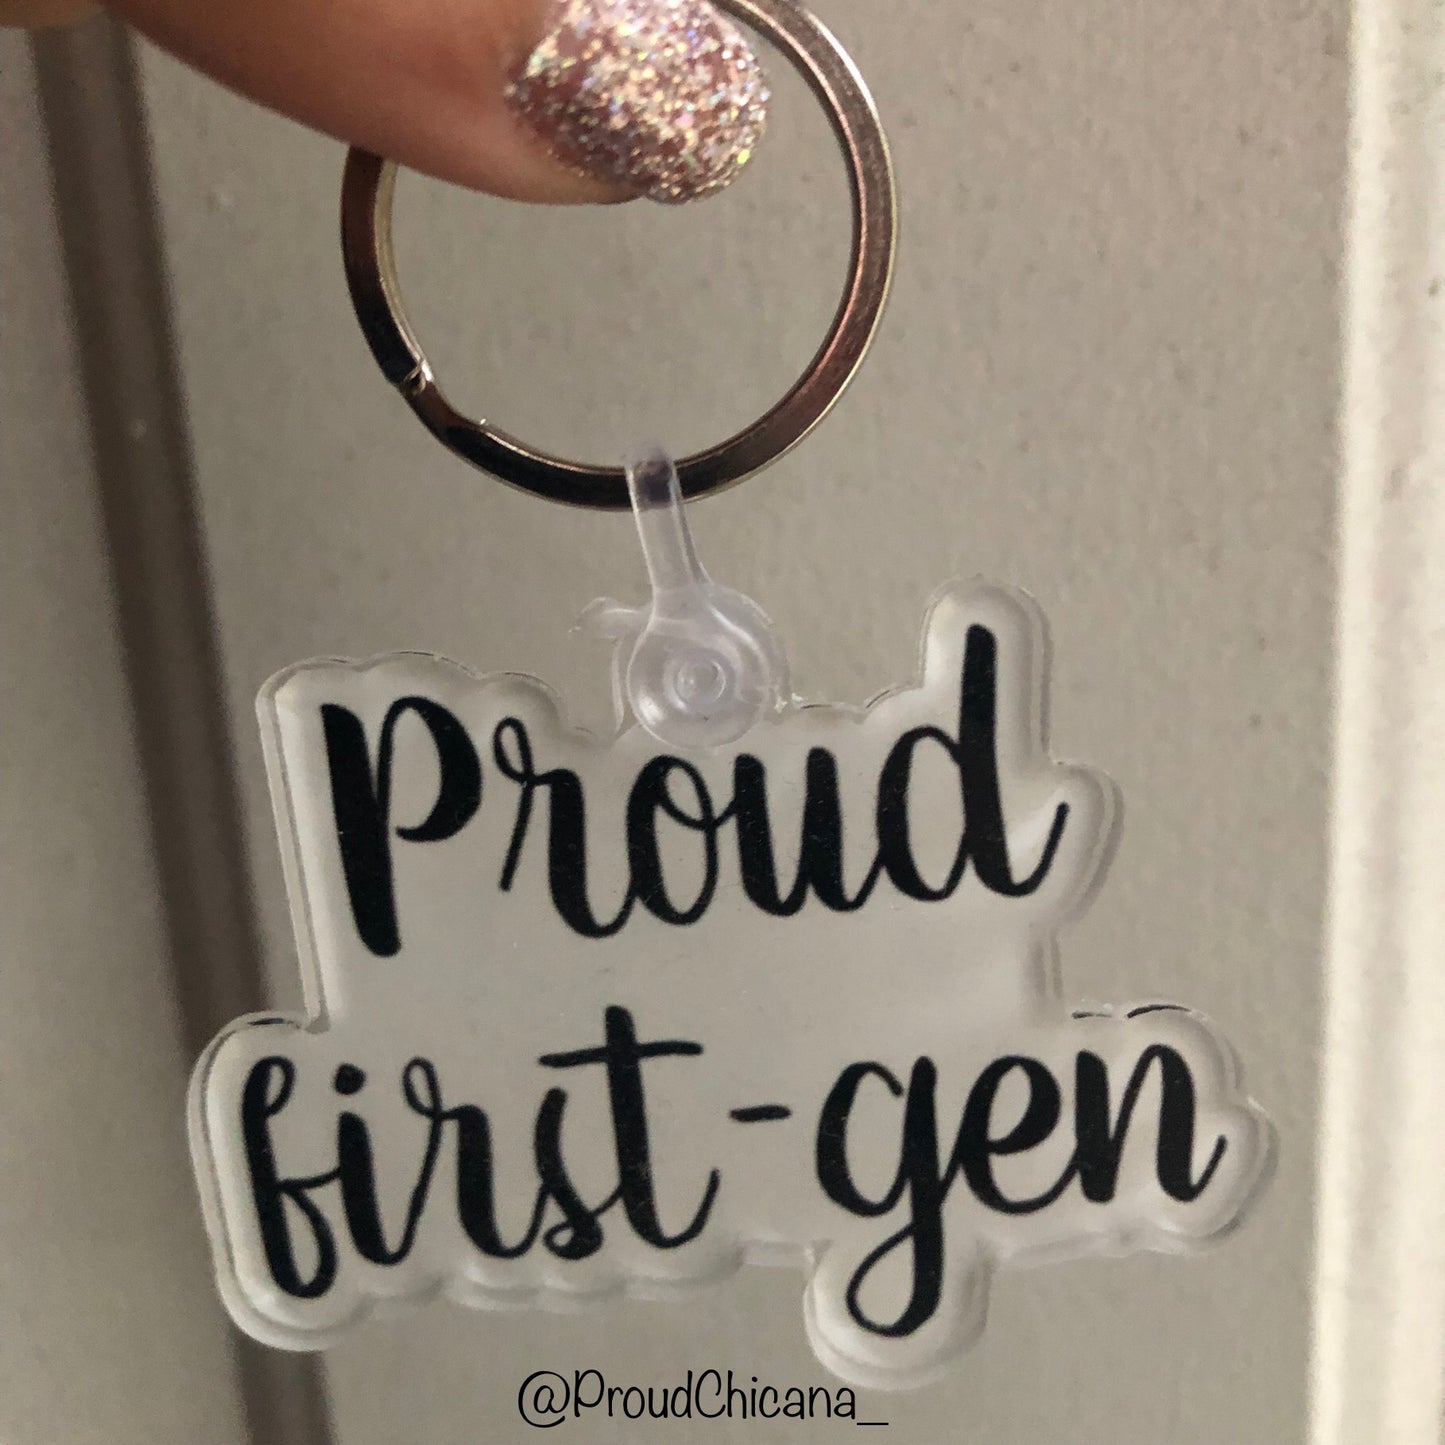 Proud first gen keychain